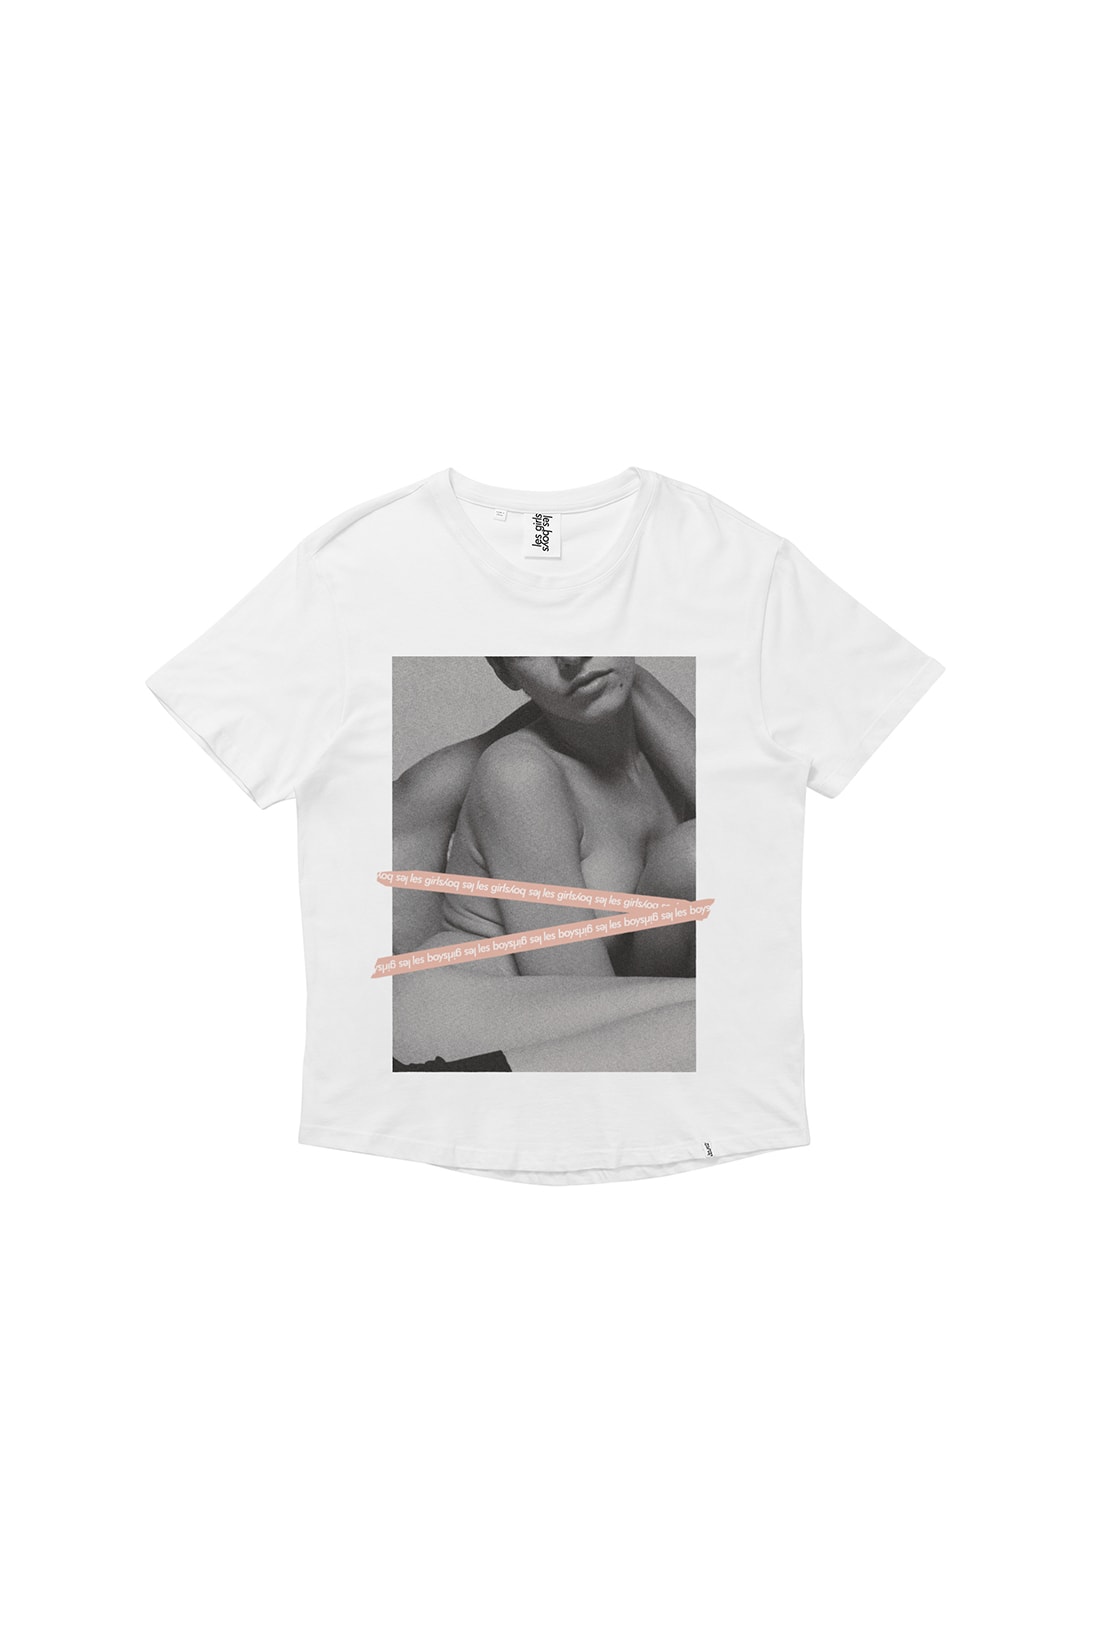 Les Girls Les Boys Censorship T-Shirts Brett Lloyed NSFW